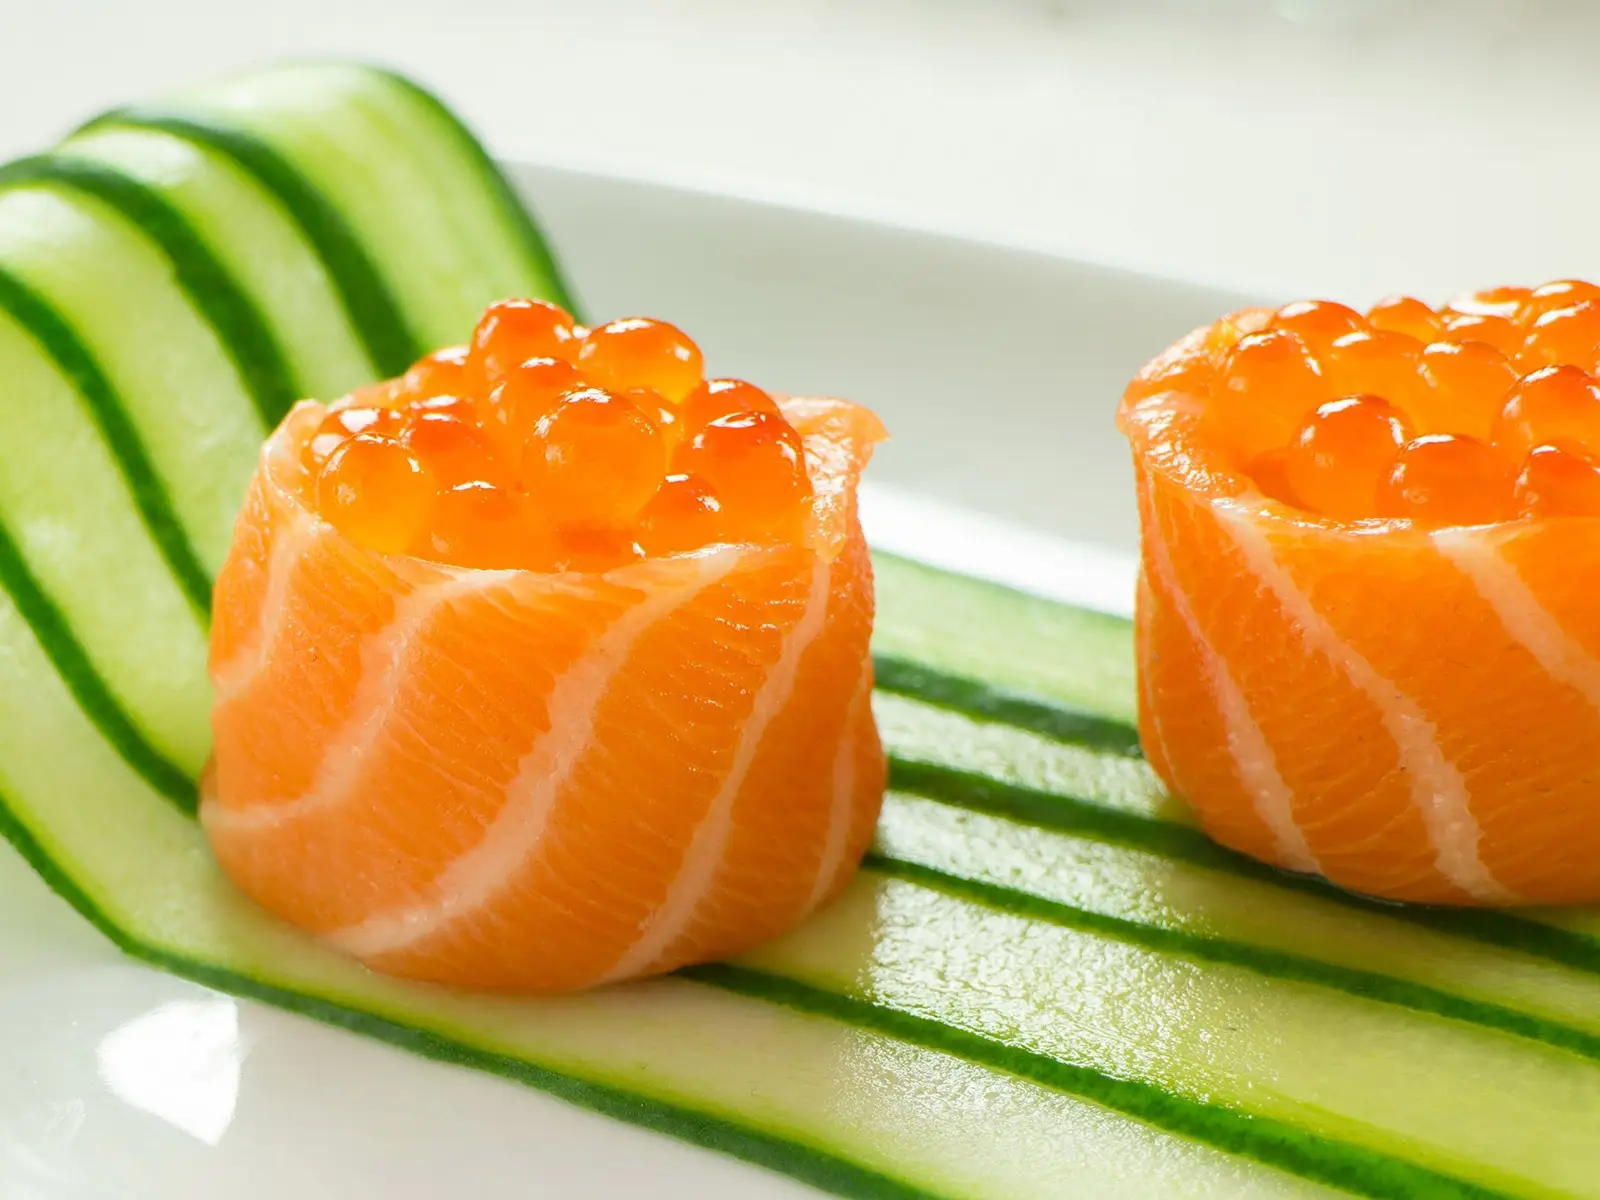 Ringraziate il norvegese Olsen per il sushi al salmone